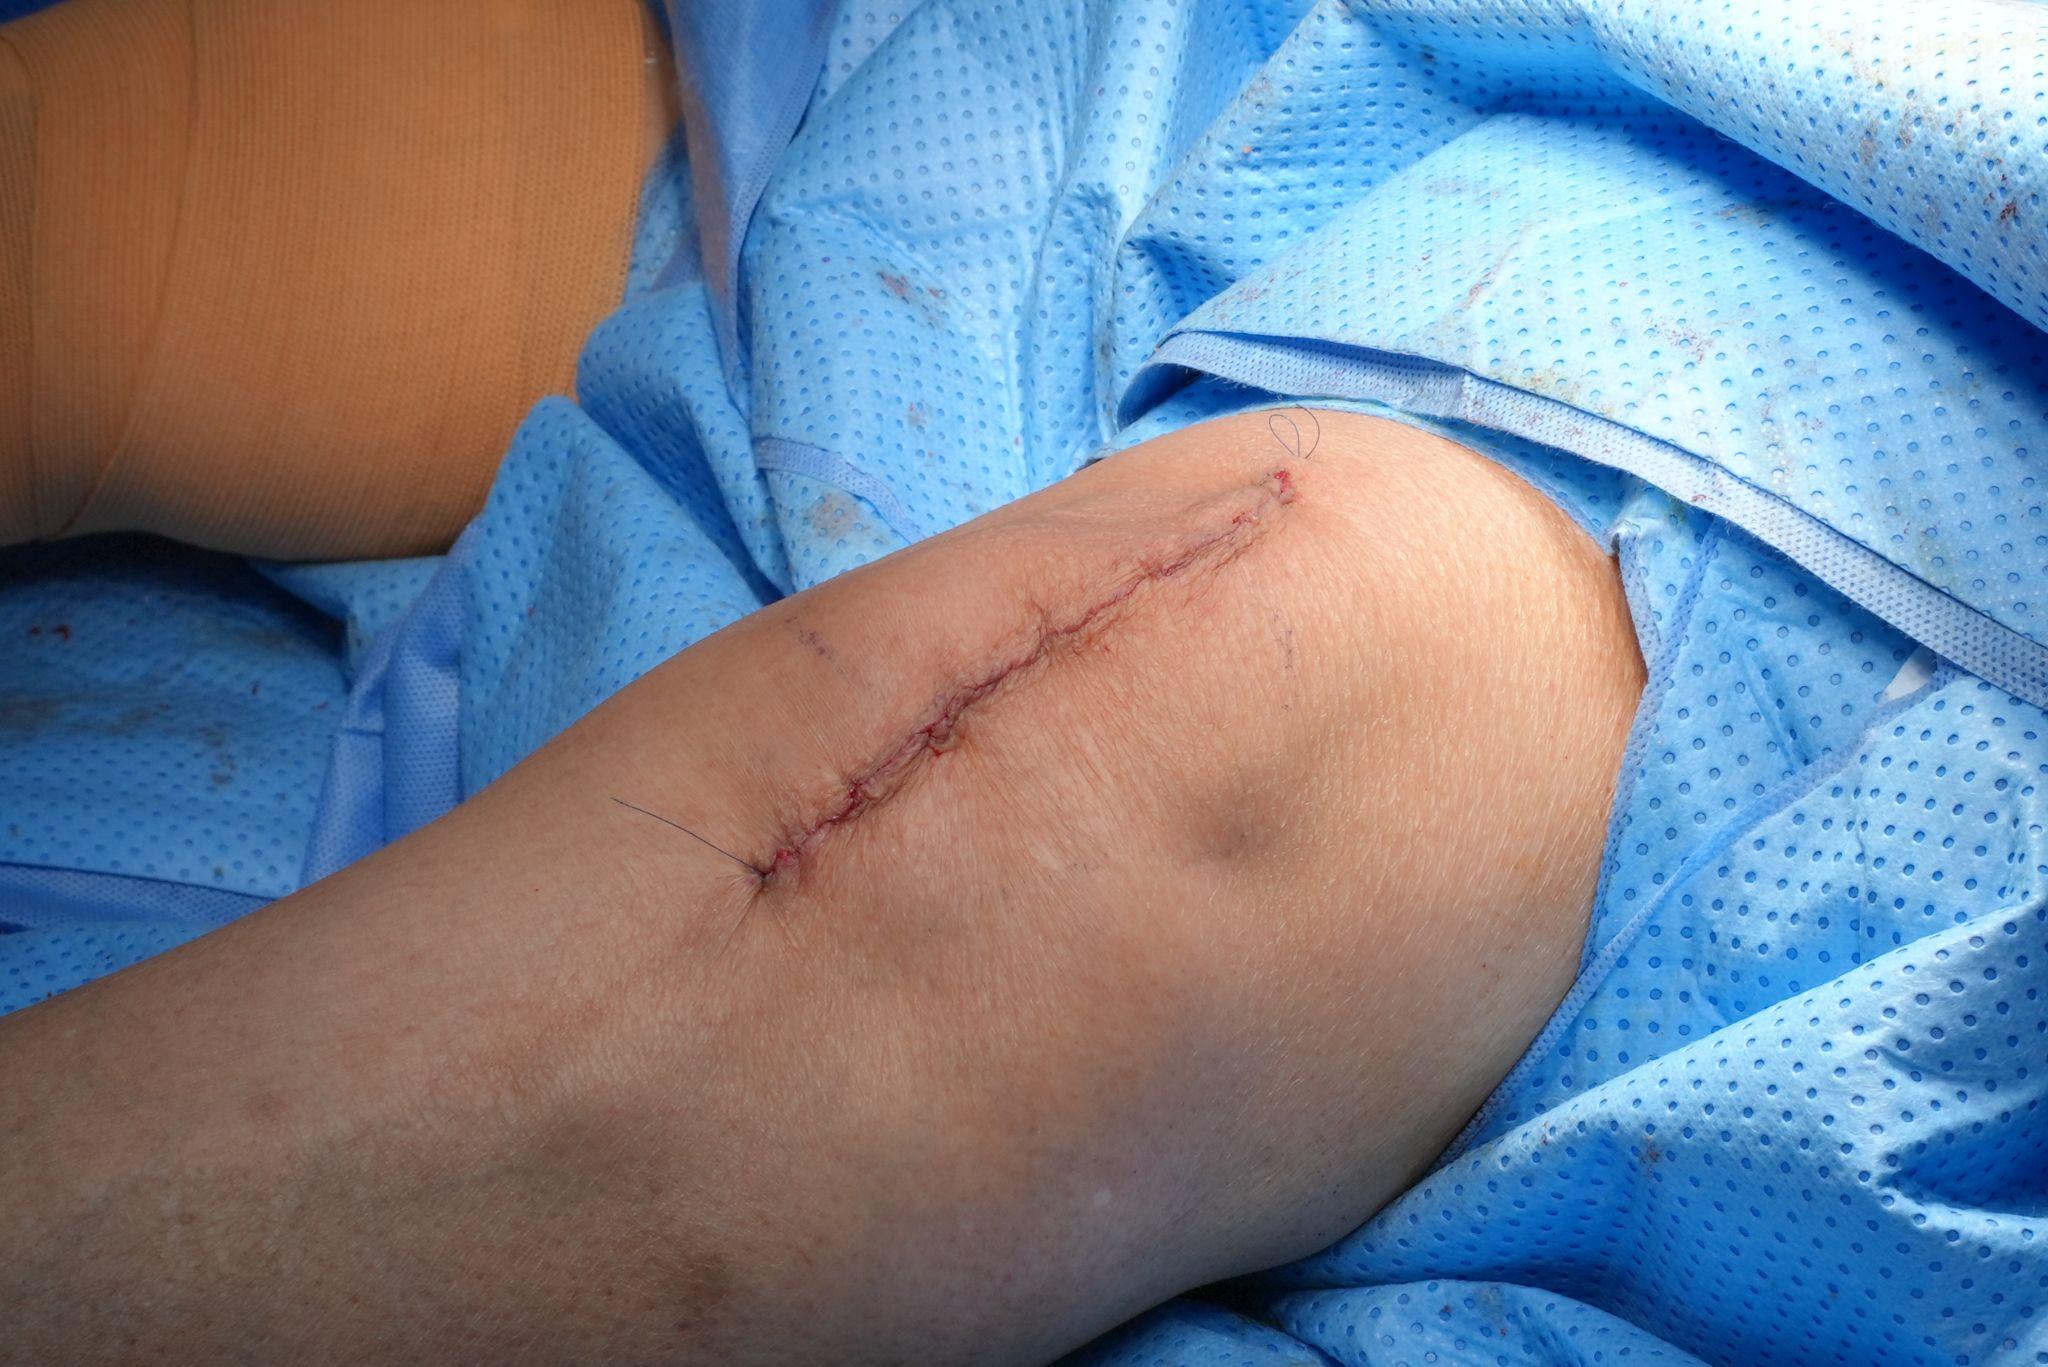 Đường mổ độc quyền chỉ 12 cm không cắt gân cơ, đảm bảo thẩm mỹ cho bệnh nhân sau thay khớp gối.